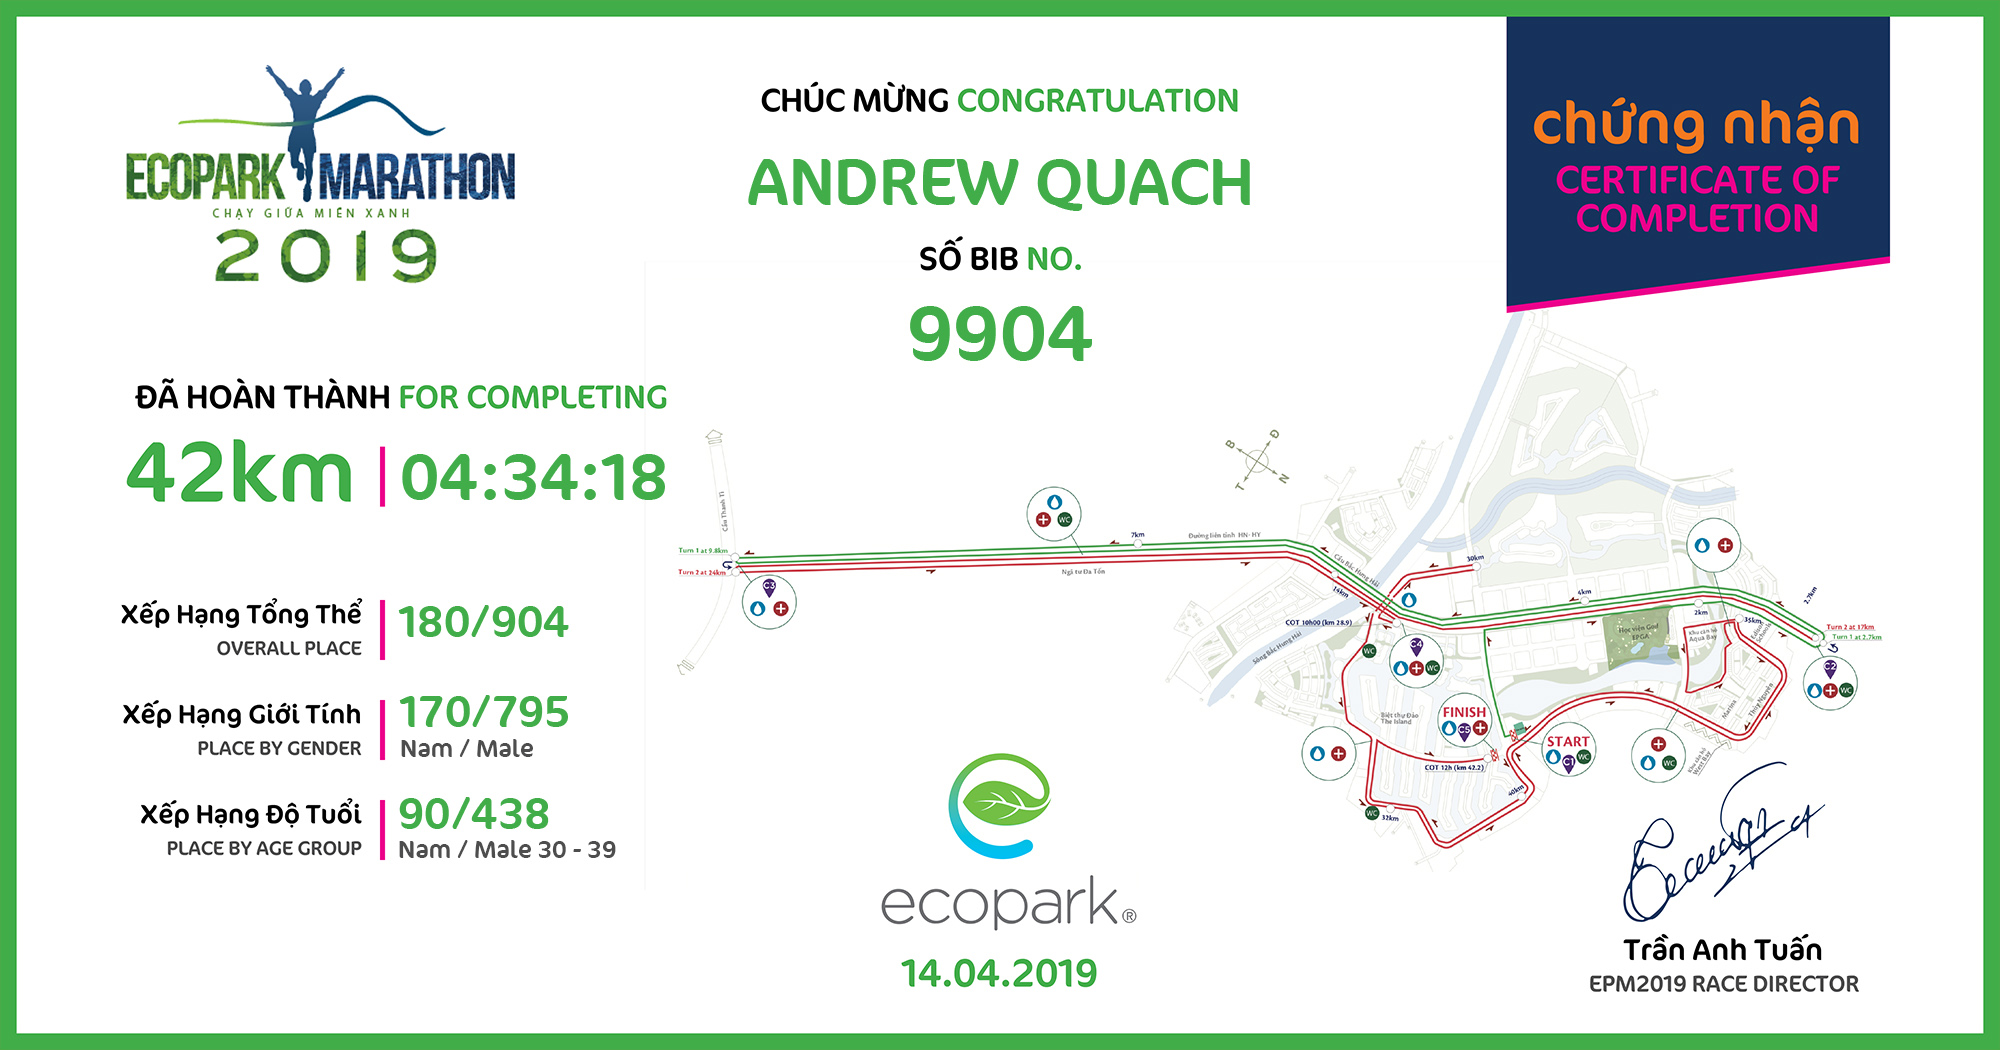 9904 - Andrew Quach